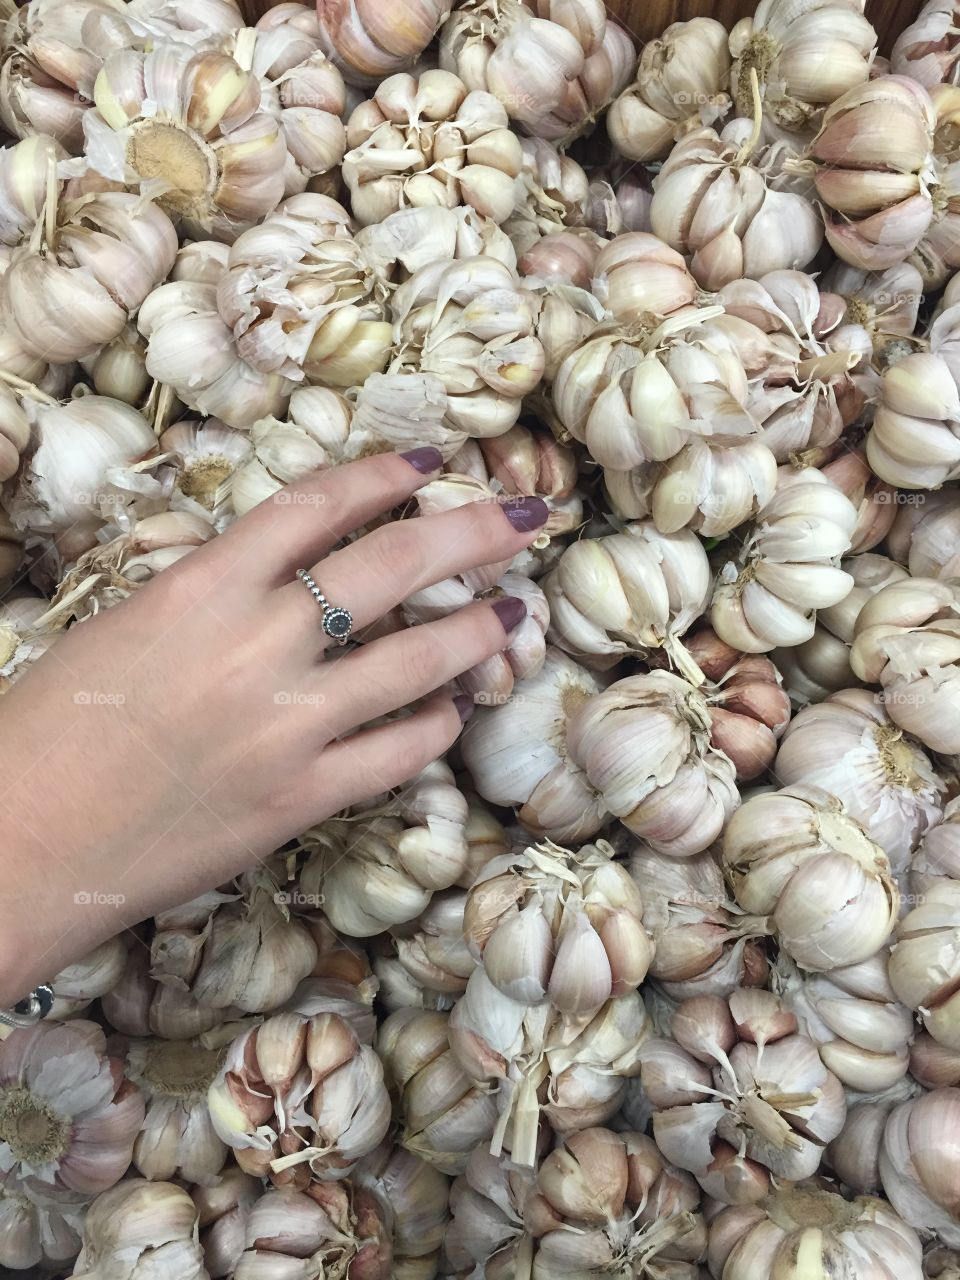 Hands on garlic